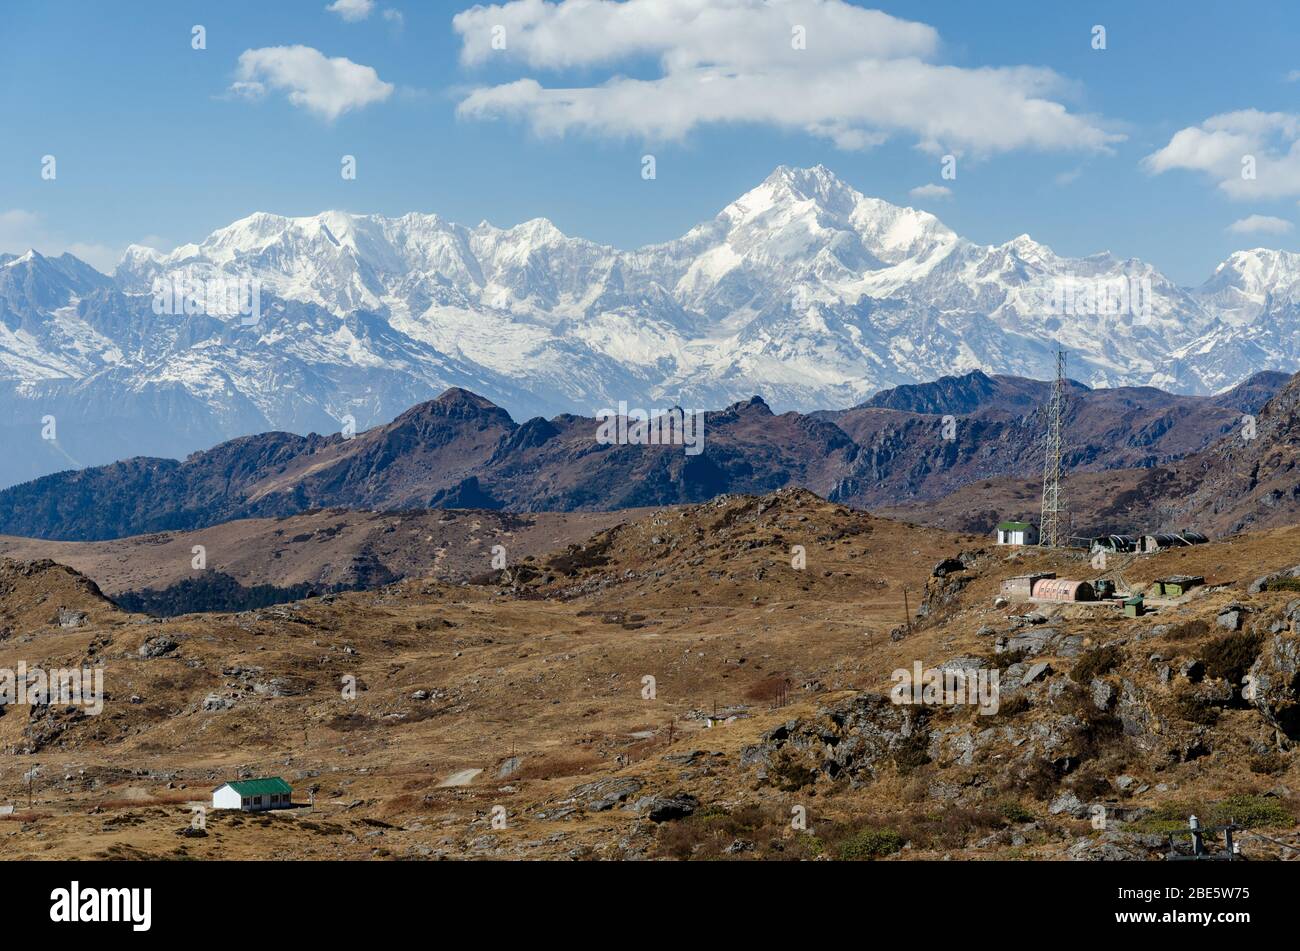 Massif enneigé massif de Kangchenjunga surplombant le paysage aride sec en décembre comme vu de Nattu la Pass, Sikkim, Inde Banque D'Images